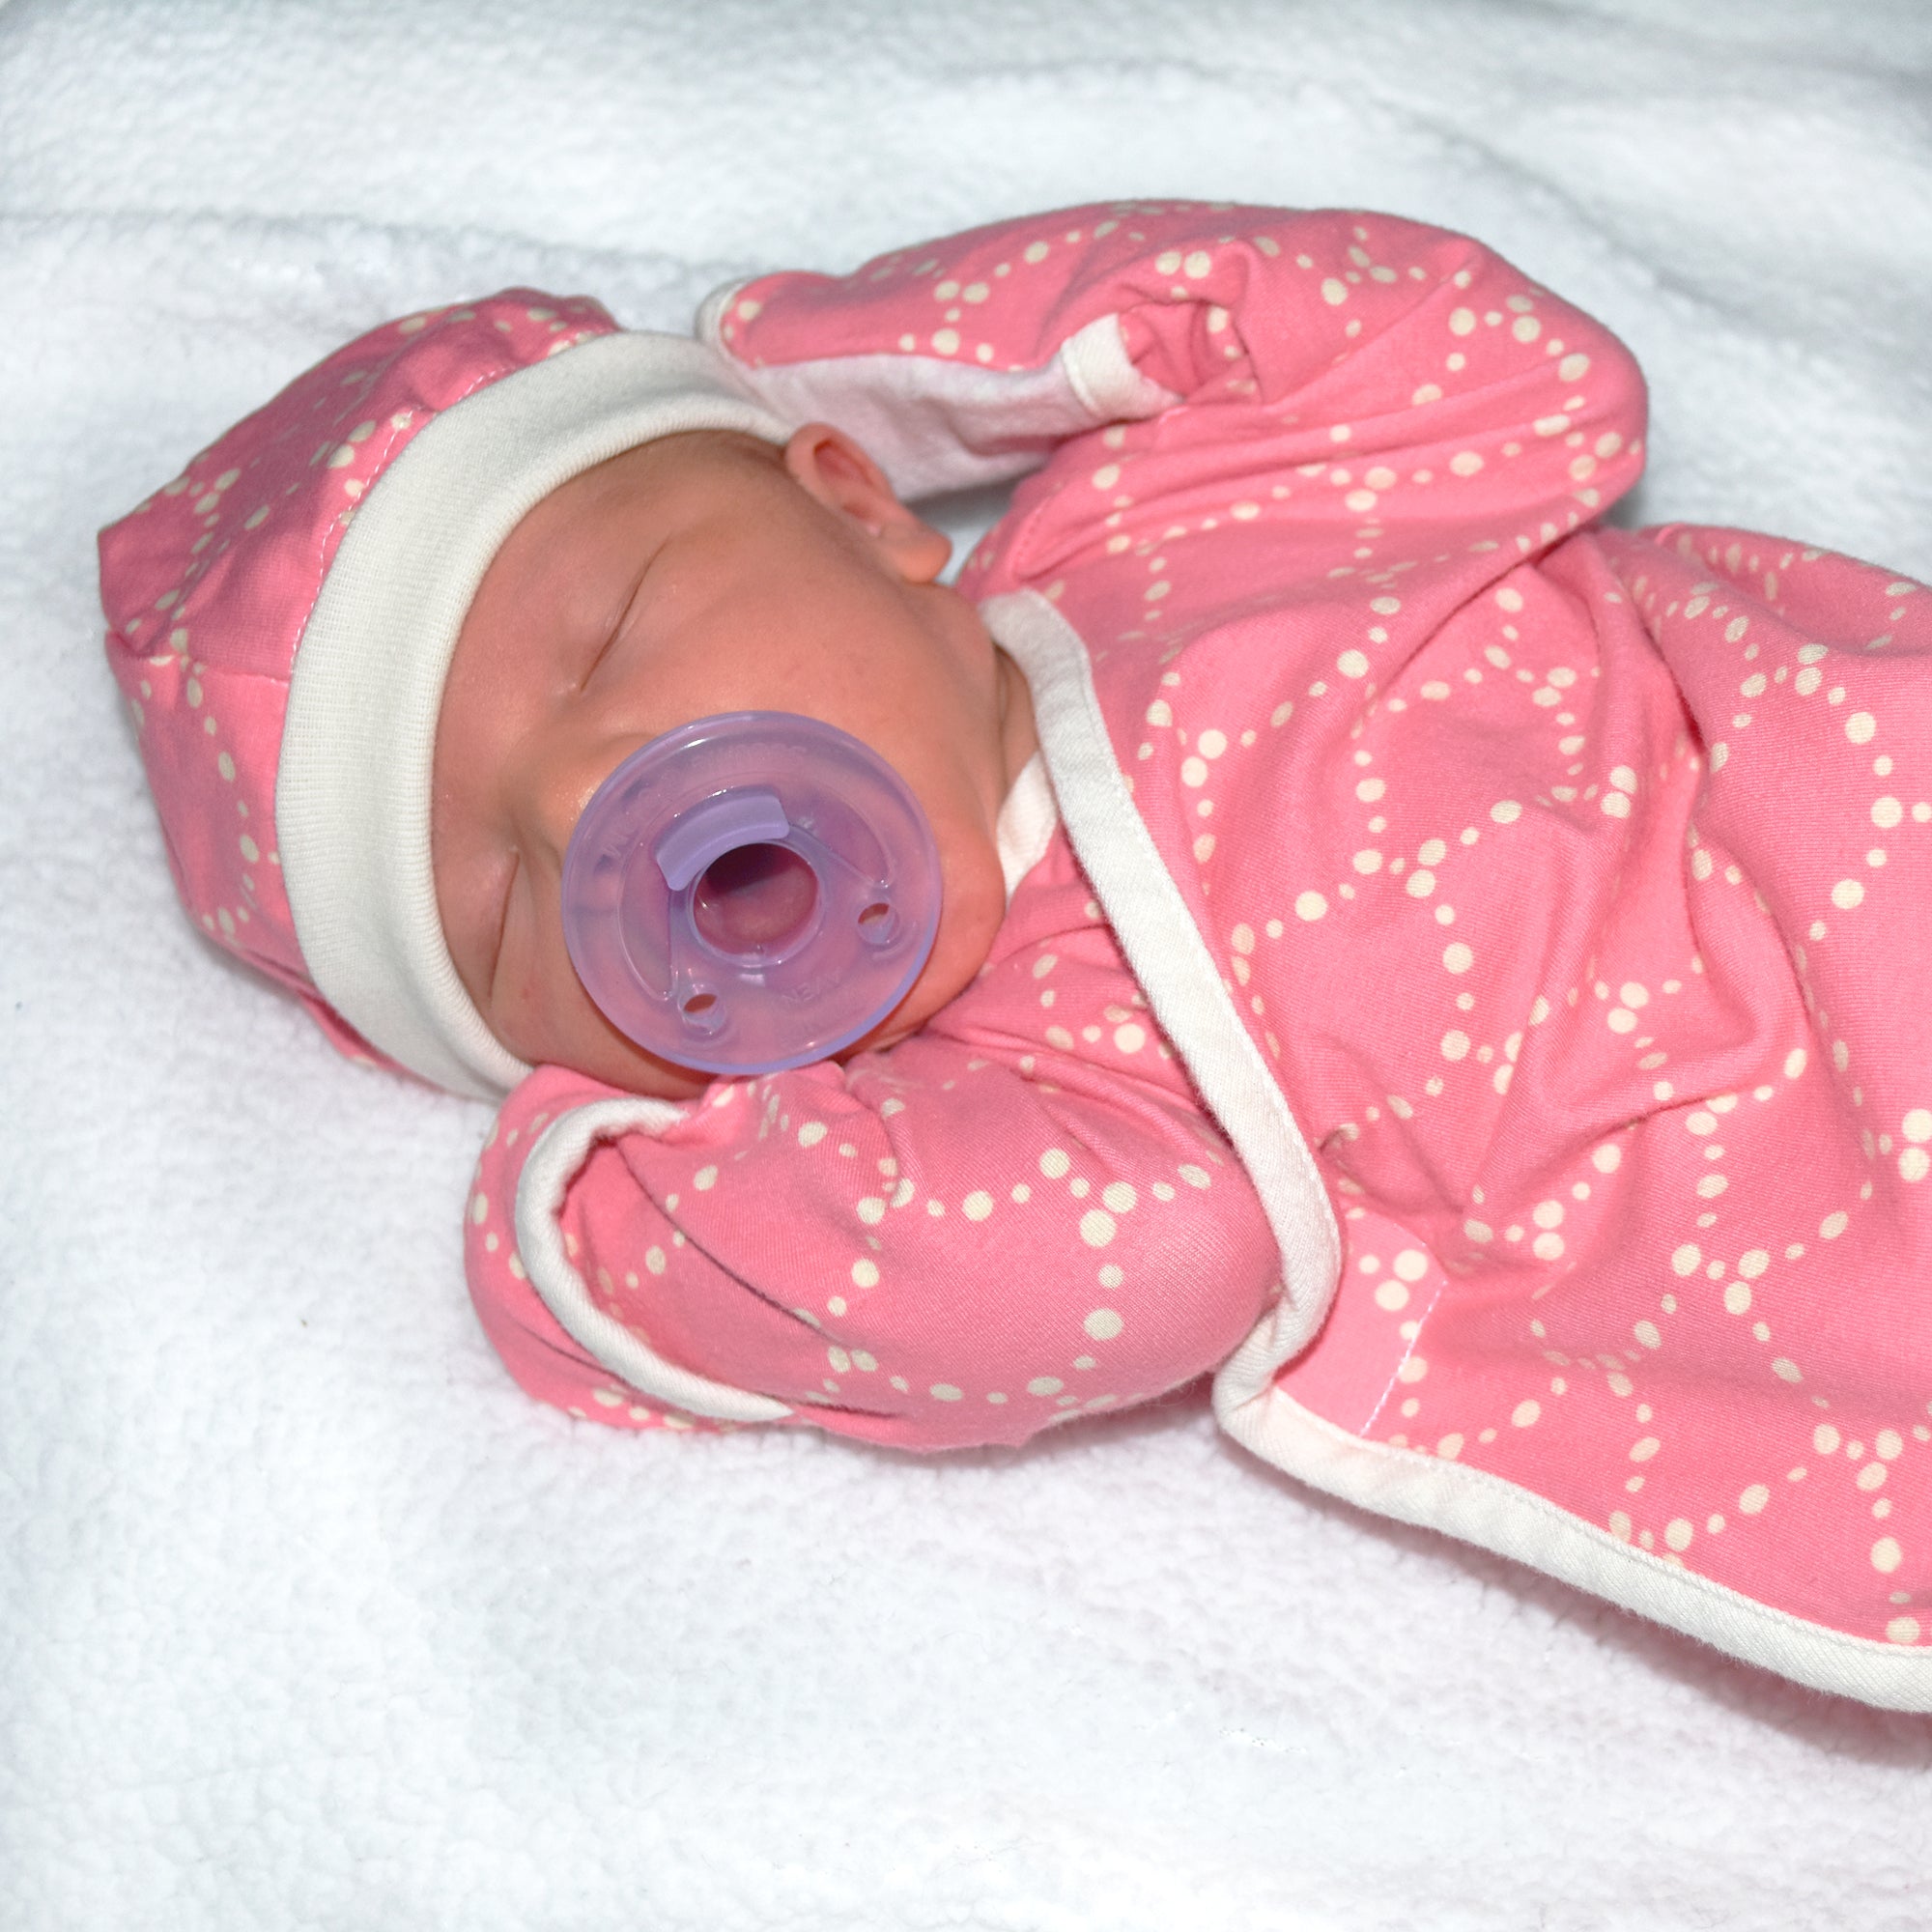 Petit Nicu, la marca para vestir a la moda a bebés prematuros